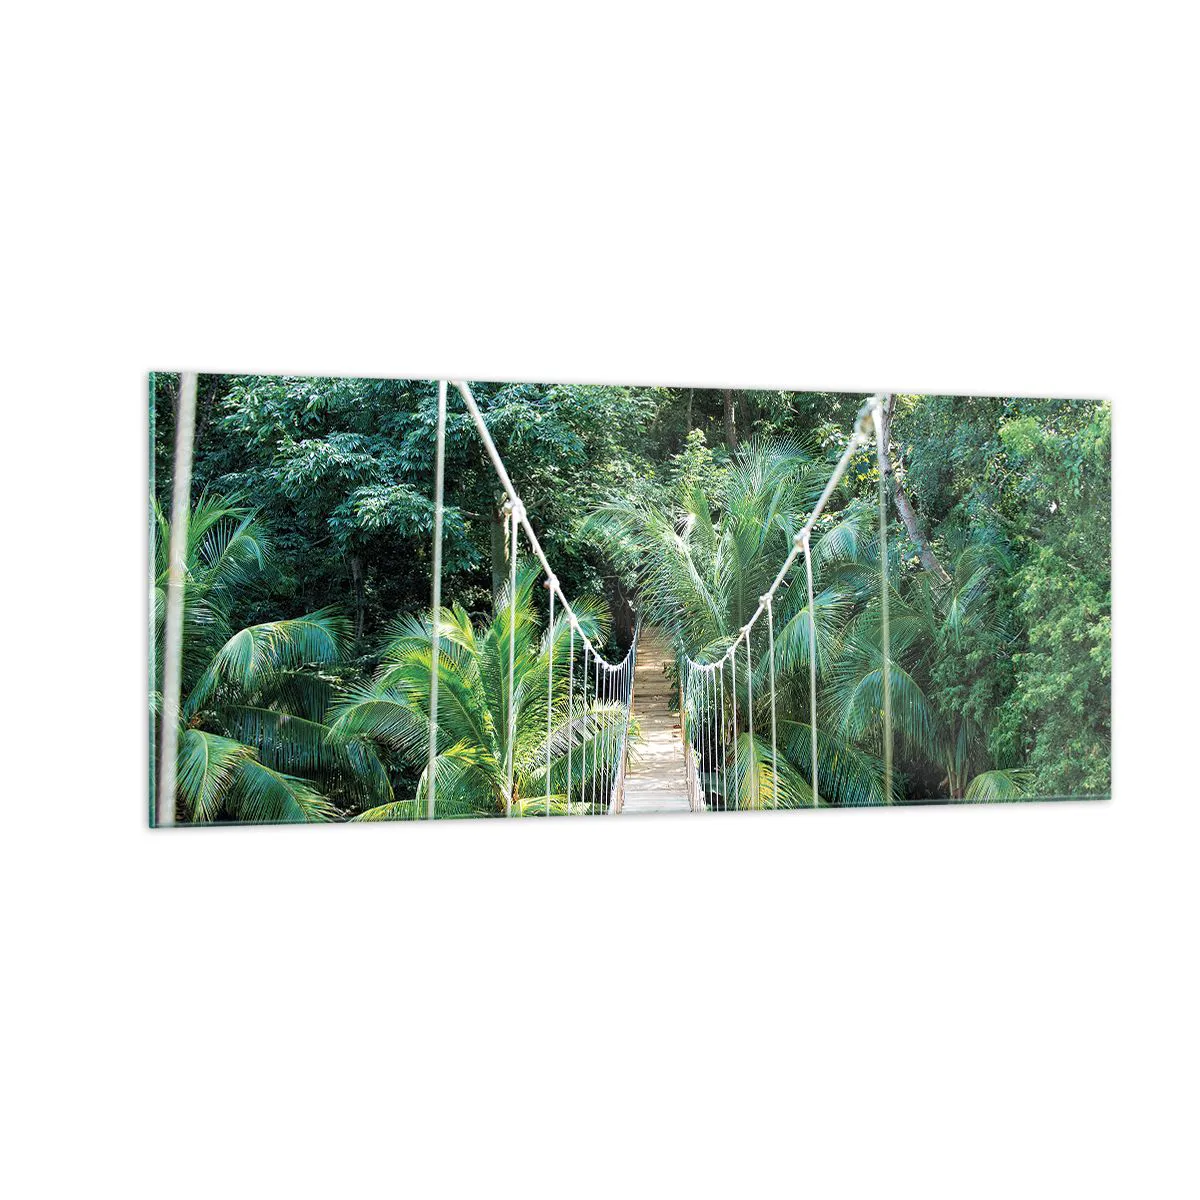 Impression sur verre, Image sur verre Arttor 100x40 cm - Welcome to the jungle! - Paysage, Jungle, Honduras, Pont Suspendu, La Nature, Pour le salon, Pour la chambre, Blanc, Marron, Horizontal, Verre, GAB100x40-4963